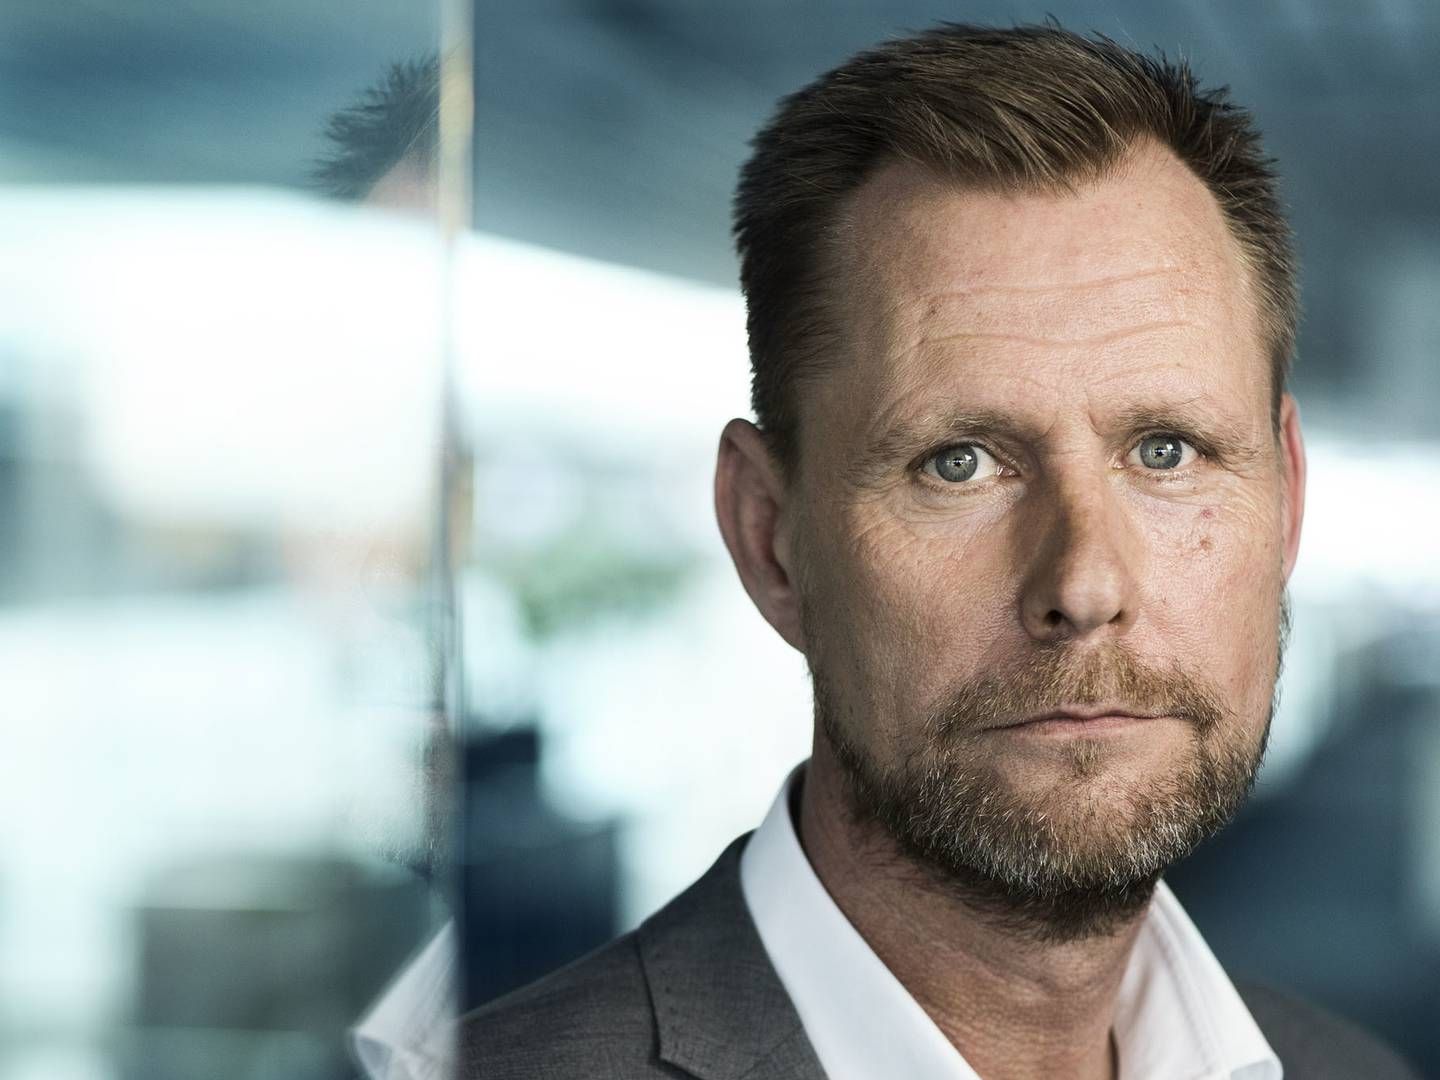 Salgsdirektør for reklamesalg hos TV 2, Peter Olafsson. | Foto: TV 2 DANMARK